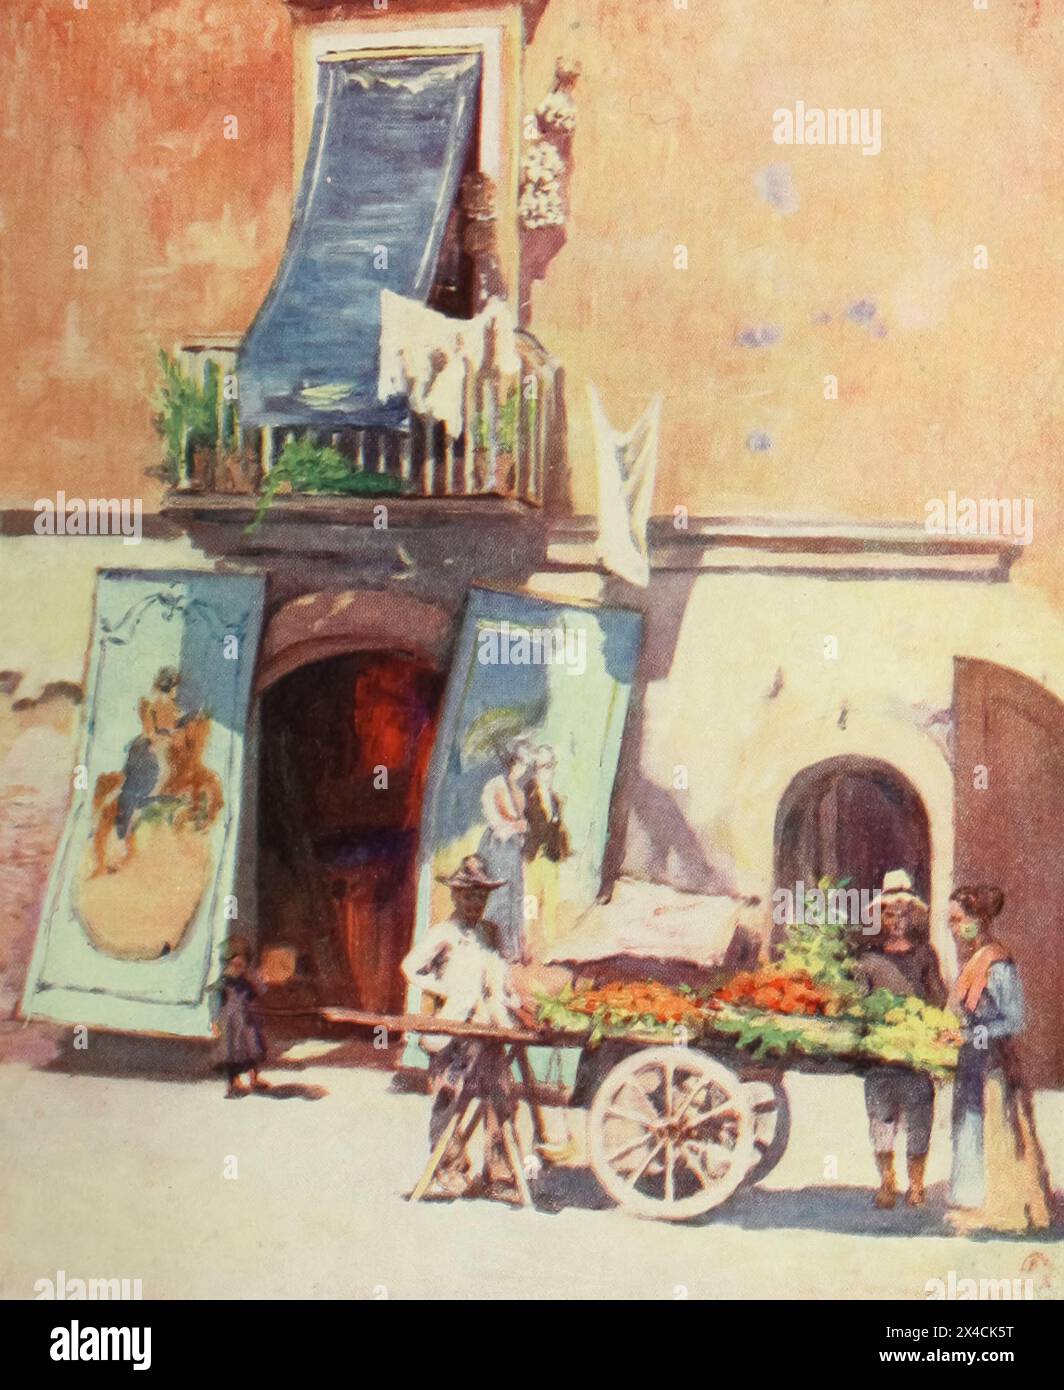 STRASSENSZENE, DIE MARINA, NEAPEL das Obst und Gemüse der Stadt wird fast ausschließlich auf Handkarren über die Straßen aus dem Buch Naples verkauft, DAS AUGUSTINE FITZGERALD VON SYBIL FITZGERALD BESCHRIEBEN HAT UND 1904 VON ADAM & CHARLES BLACK LONDON VERÖFFENTLICHT WURDE Stockfoto